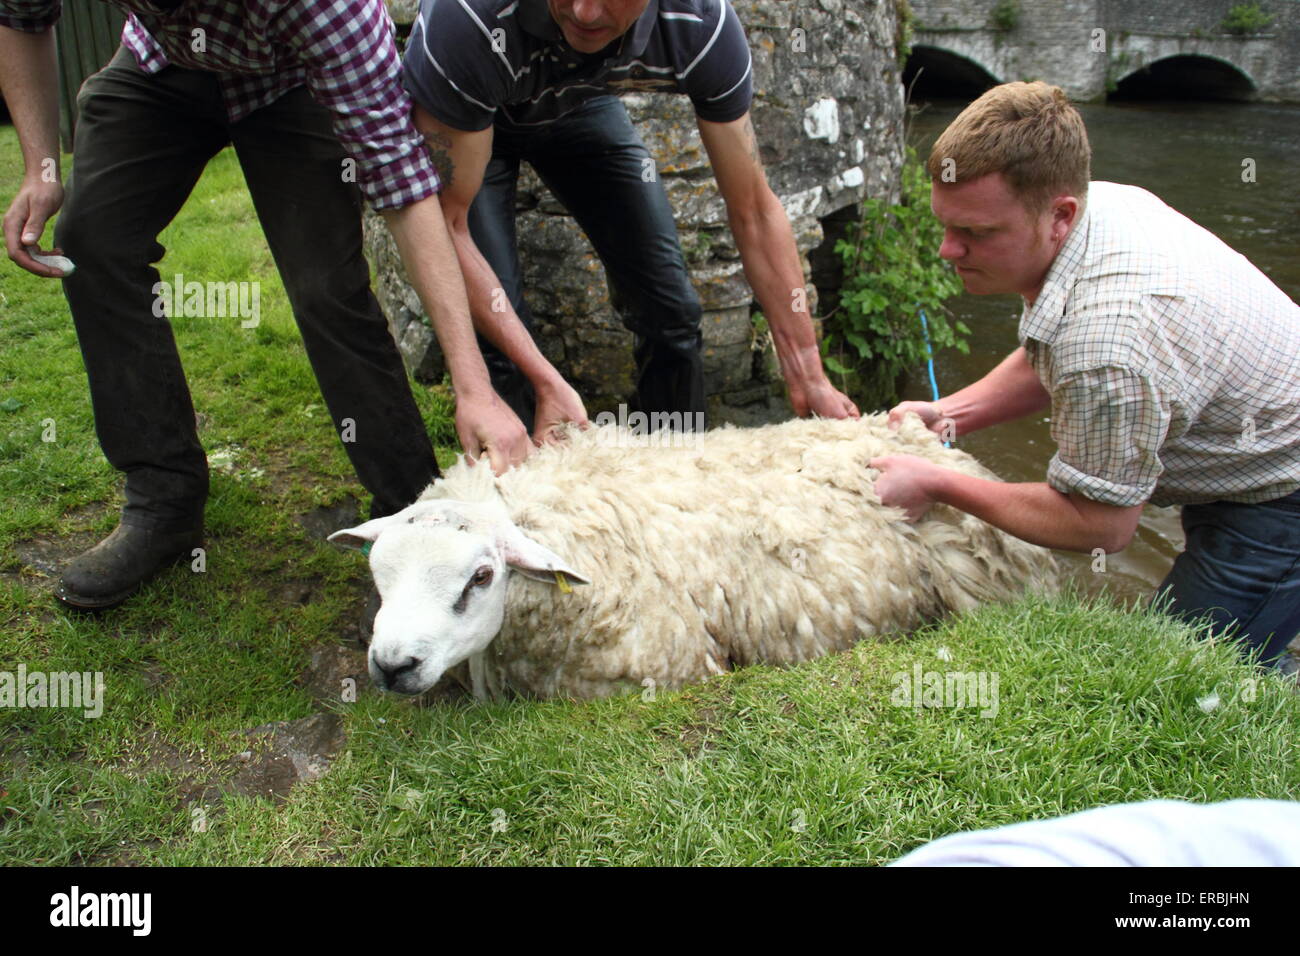 Les moutons sont trempées dans la rivière Wye Ashford au-dans-l-Eau dans le parc national de Peak District, Derbyshire, Royaume-Uni Banque D'Images